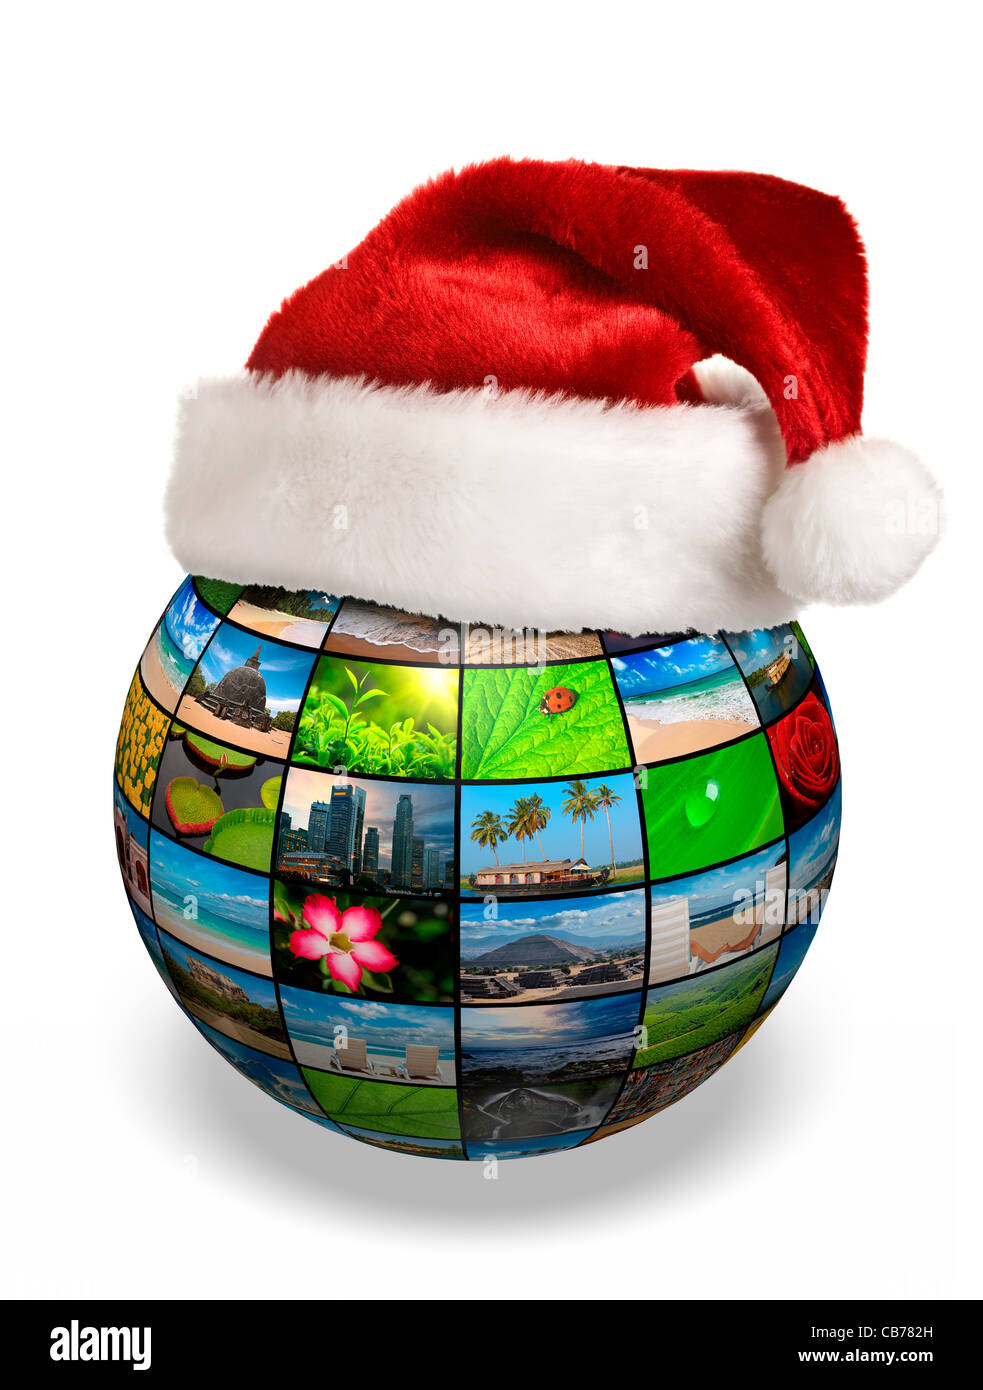 Social-Media Planet auf Weihnachten - Multimedia-Globus mit Bildern mit Weihnachtsmütze Stockfoto